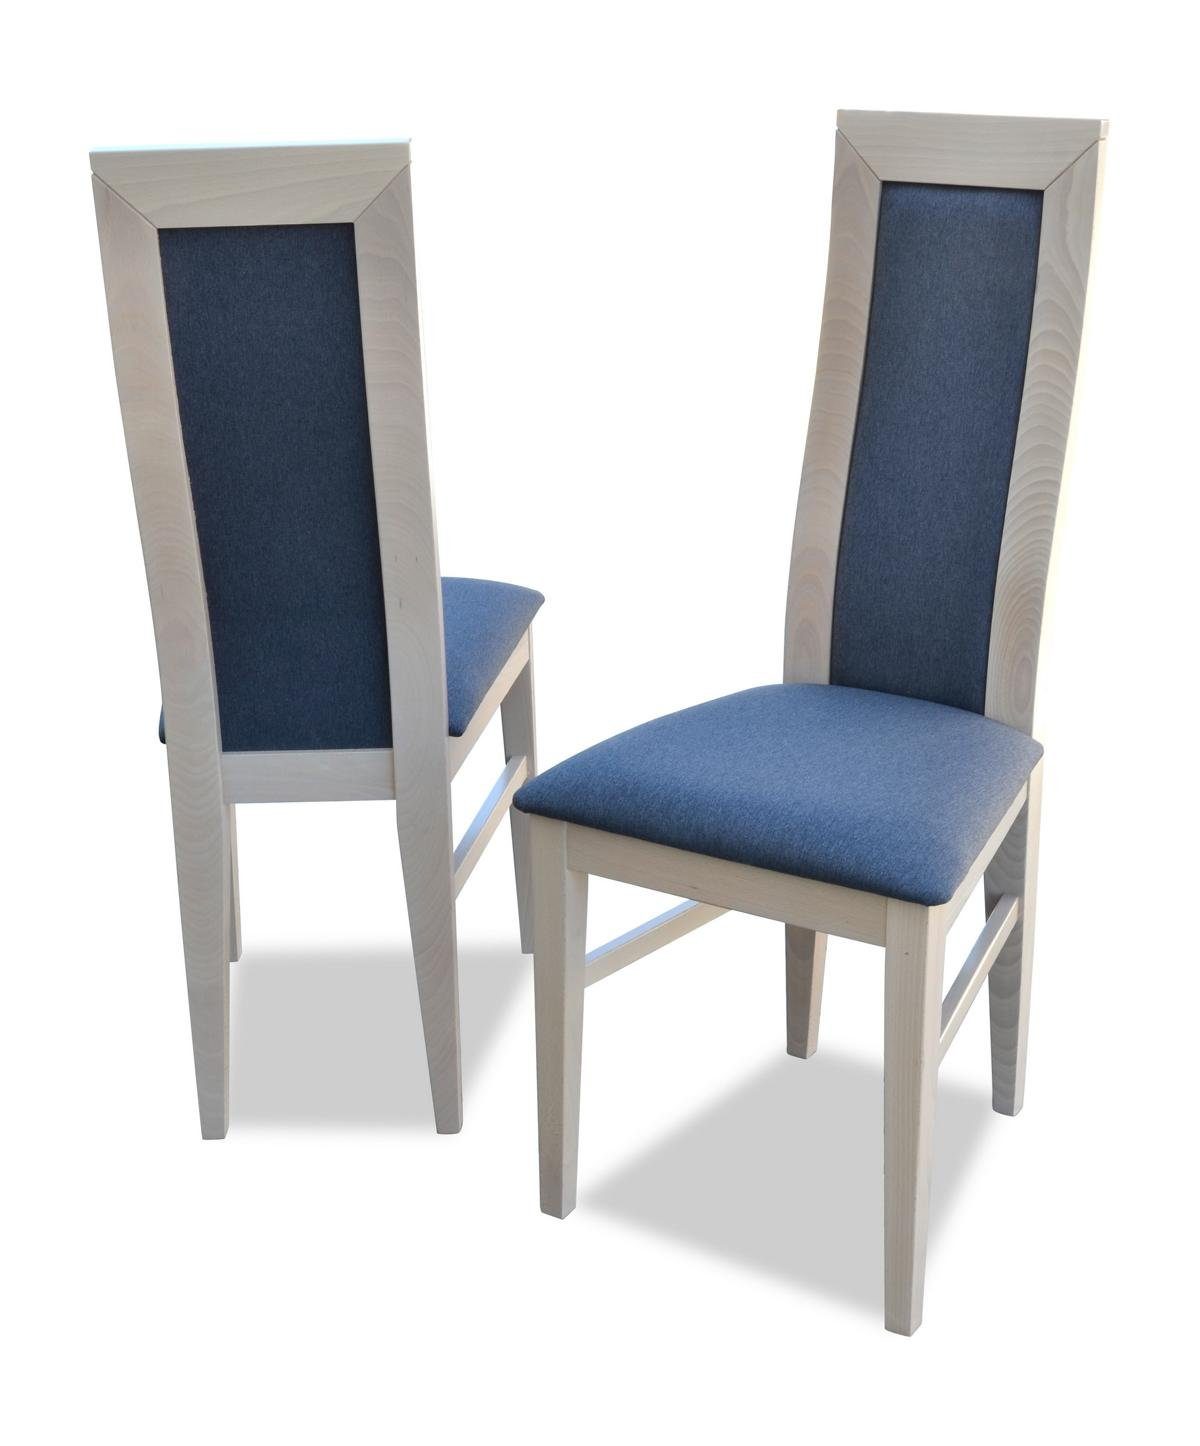 Tisch 1x JVmoebel Ess Polster Lehn Holz Stuhl, Tische Stoff Sitz Leder Stühle